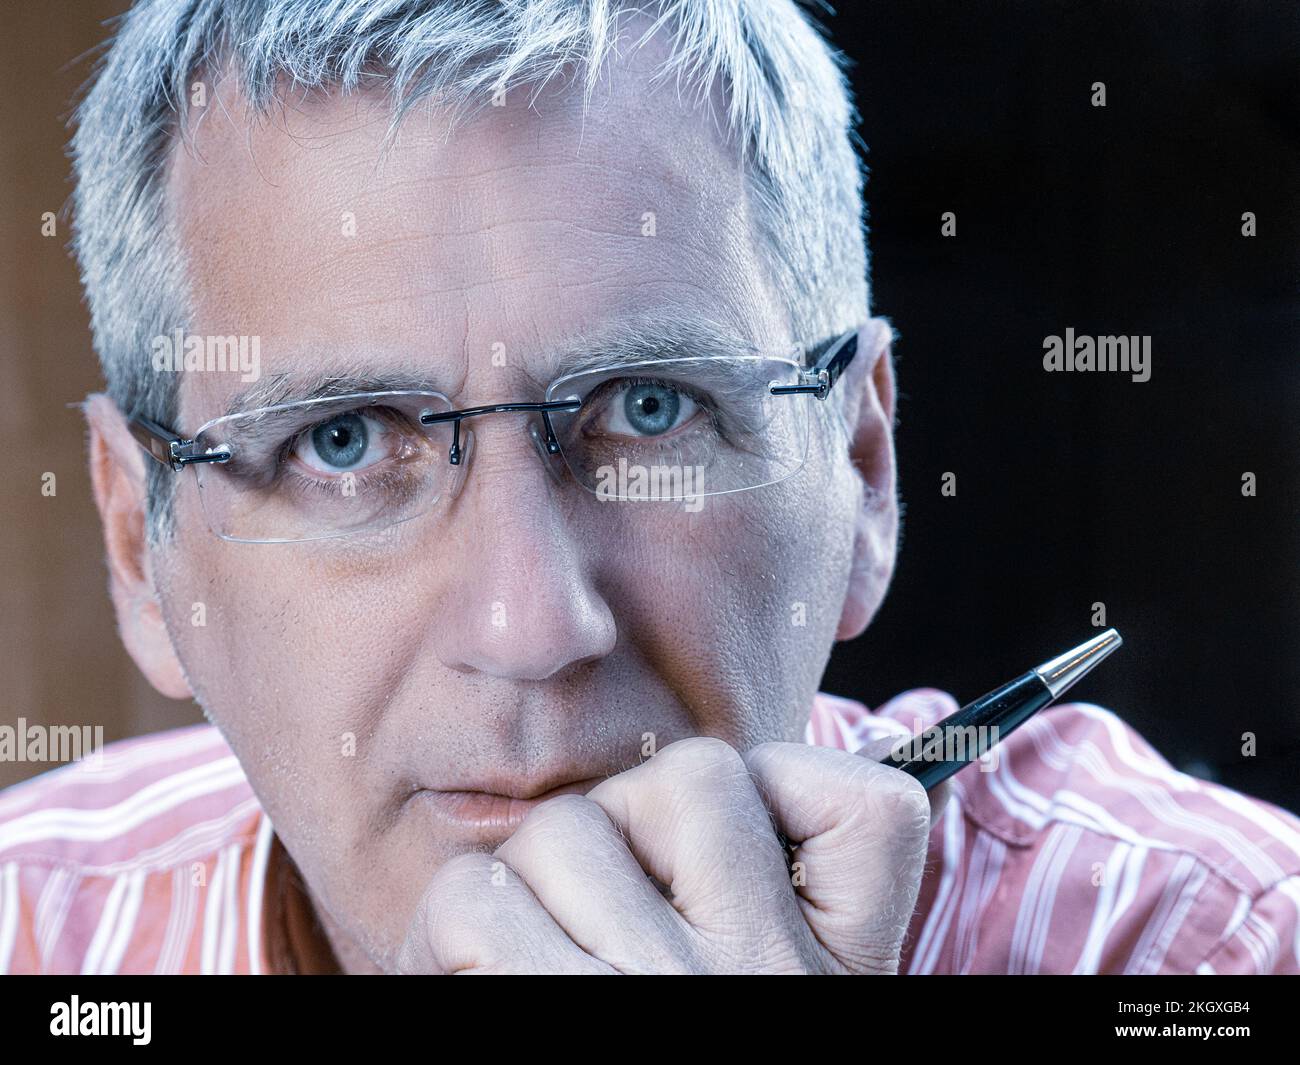 Geschäftsmann männlich 50s-Gesicht, reifer Brillenträger, Hand am Kinn hält einen Stift, der direkt in die Kamera schaut, mit ernstem Gesichtsausdruck Stockfoto